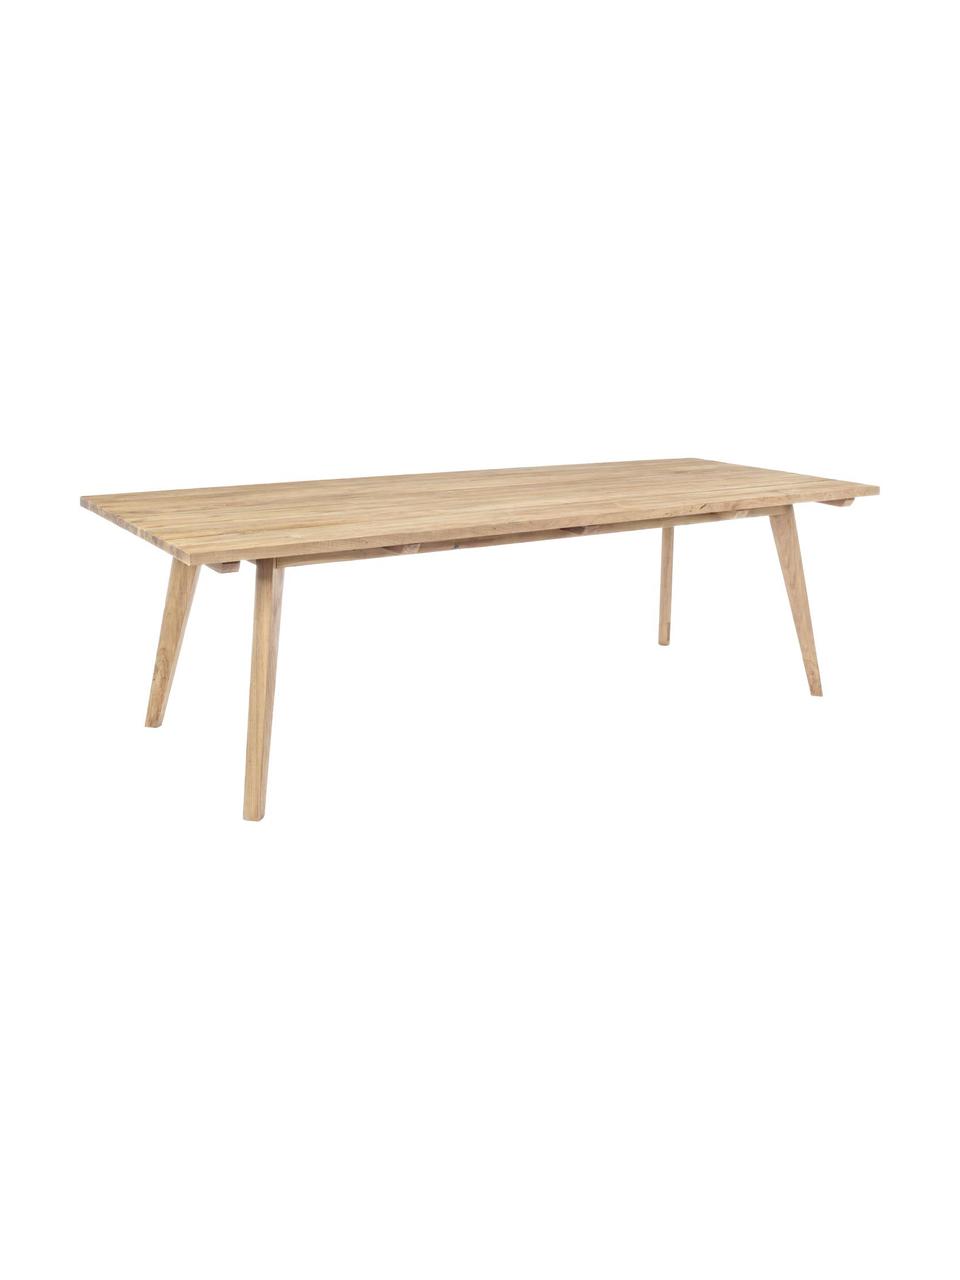 Table de jardin en bois de teck Kendari, Bois de teck recyclé et non traité
Certifié FSC, Teck, l 260 x p 100 cm